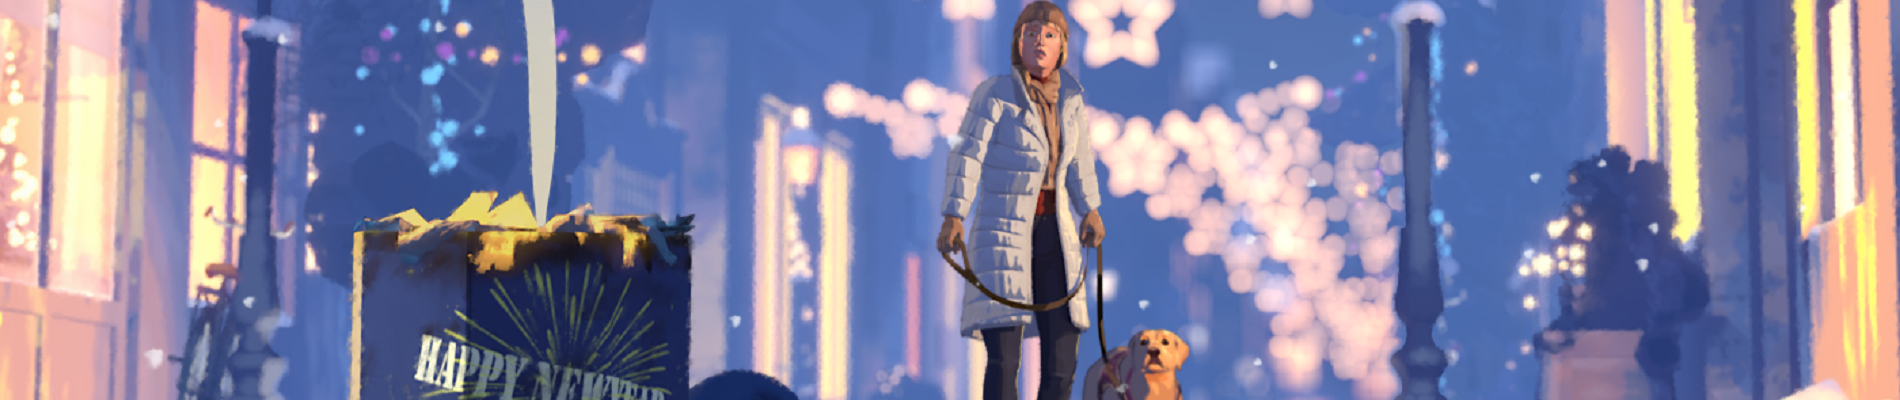 Still uit de animatie met een besneeuwde straat met kerstsfeer. Baas en hulphond kijken angstig naar vuurwerk op de voorgrond waarop happy new year staat